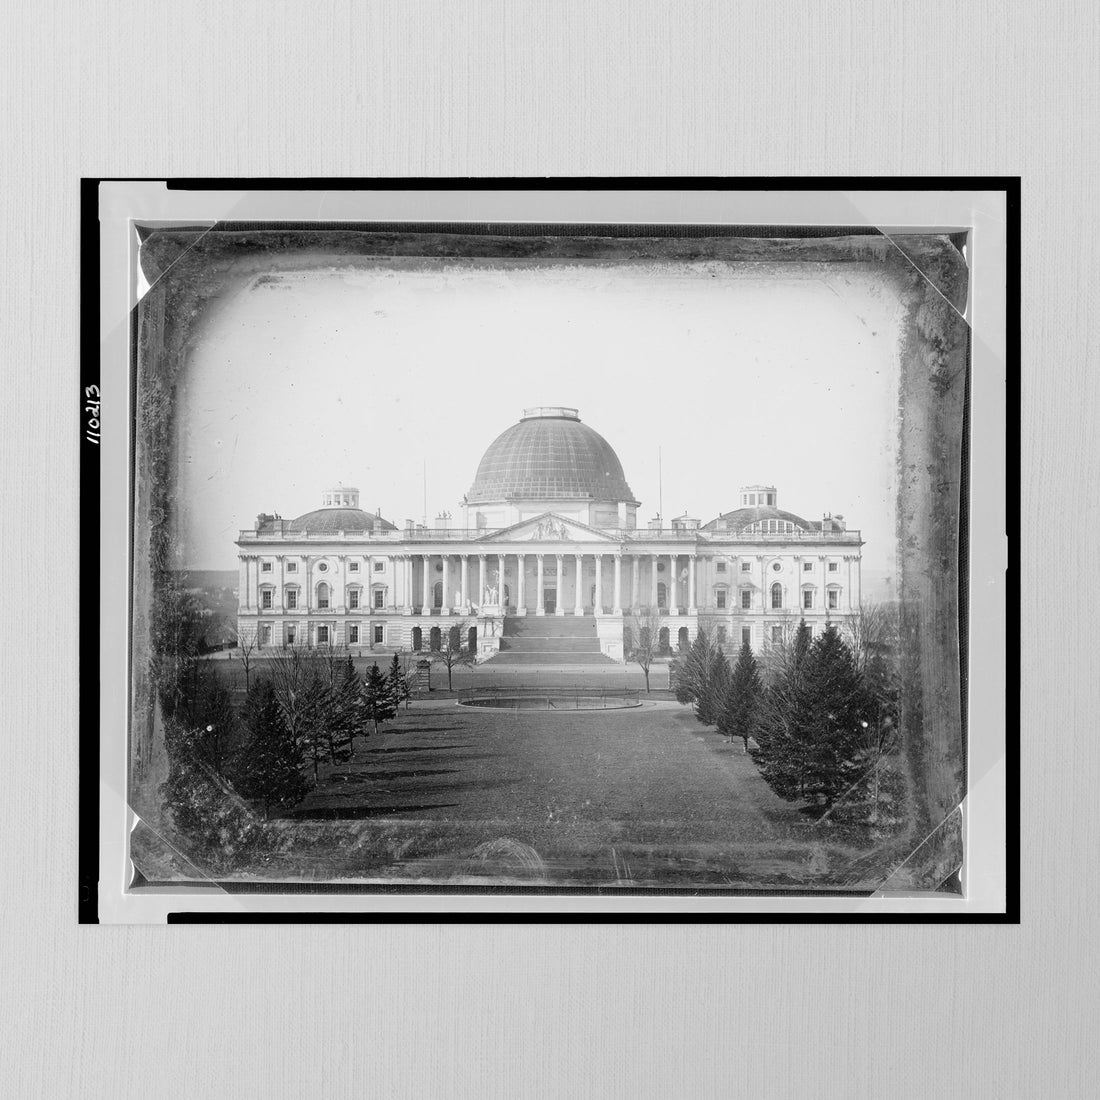 US Capitol by Jordan J. Lloyd, 1846